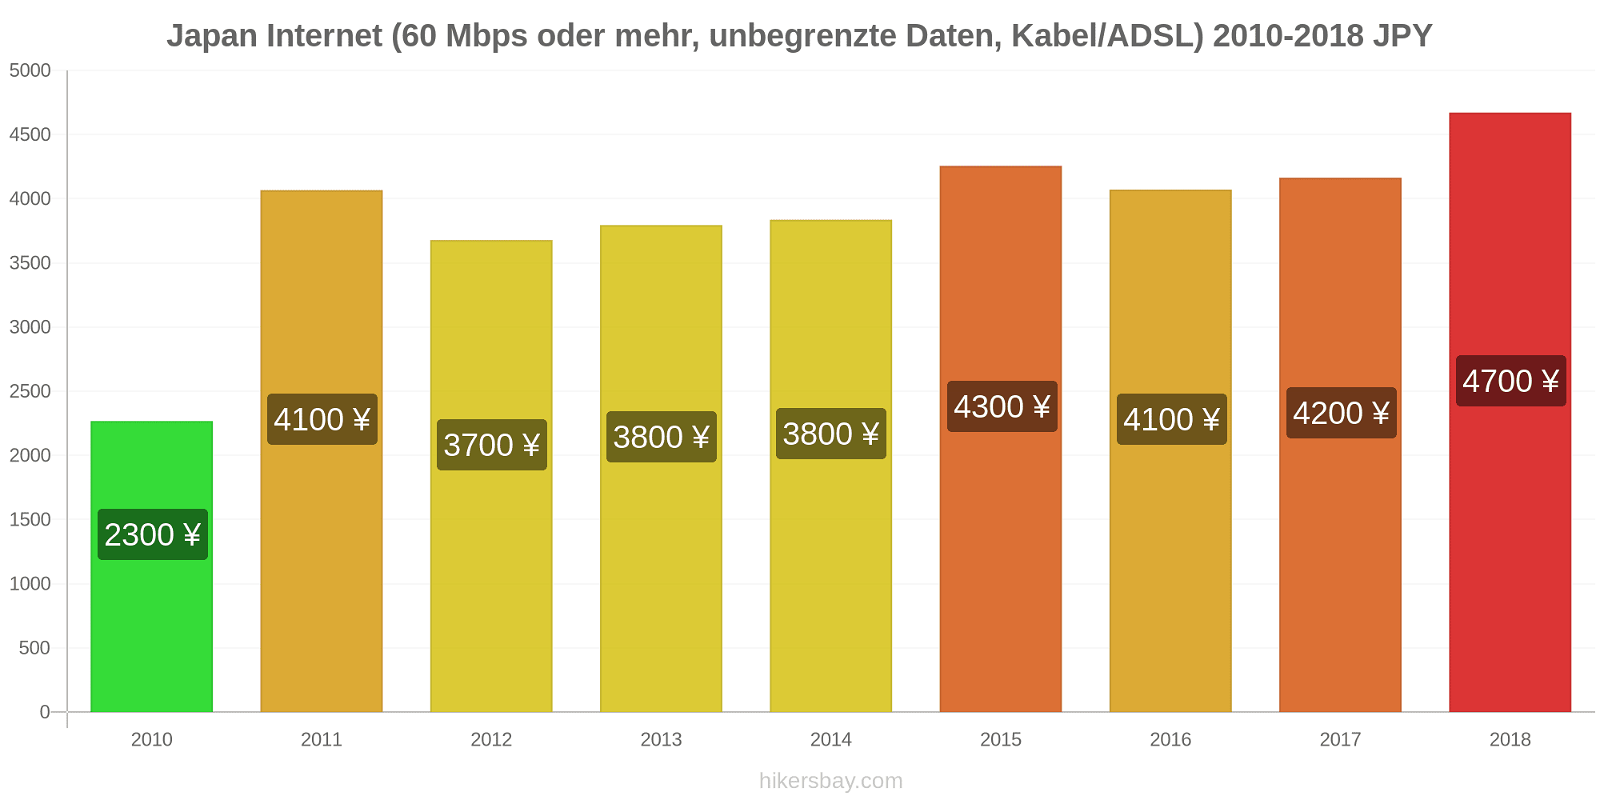 Japan Preisänderungen Internet (60 Mbps oder mehr, unbegrenzte Daten, Kabel/ADSL) hikersbay.com